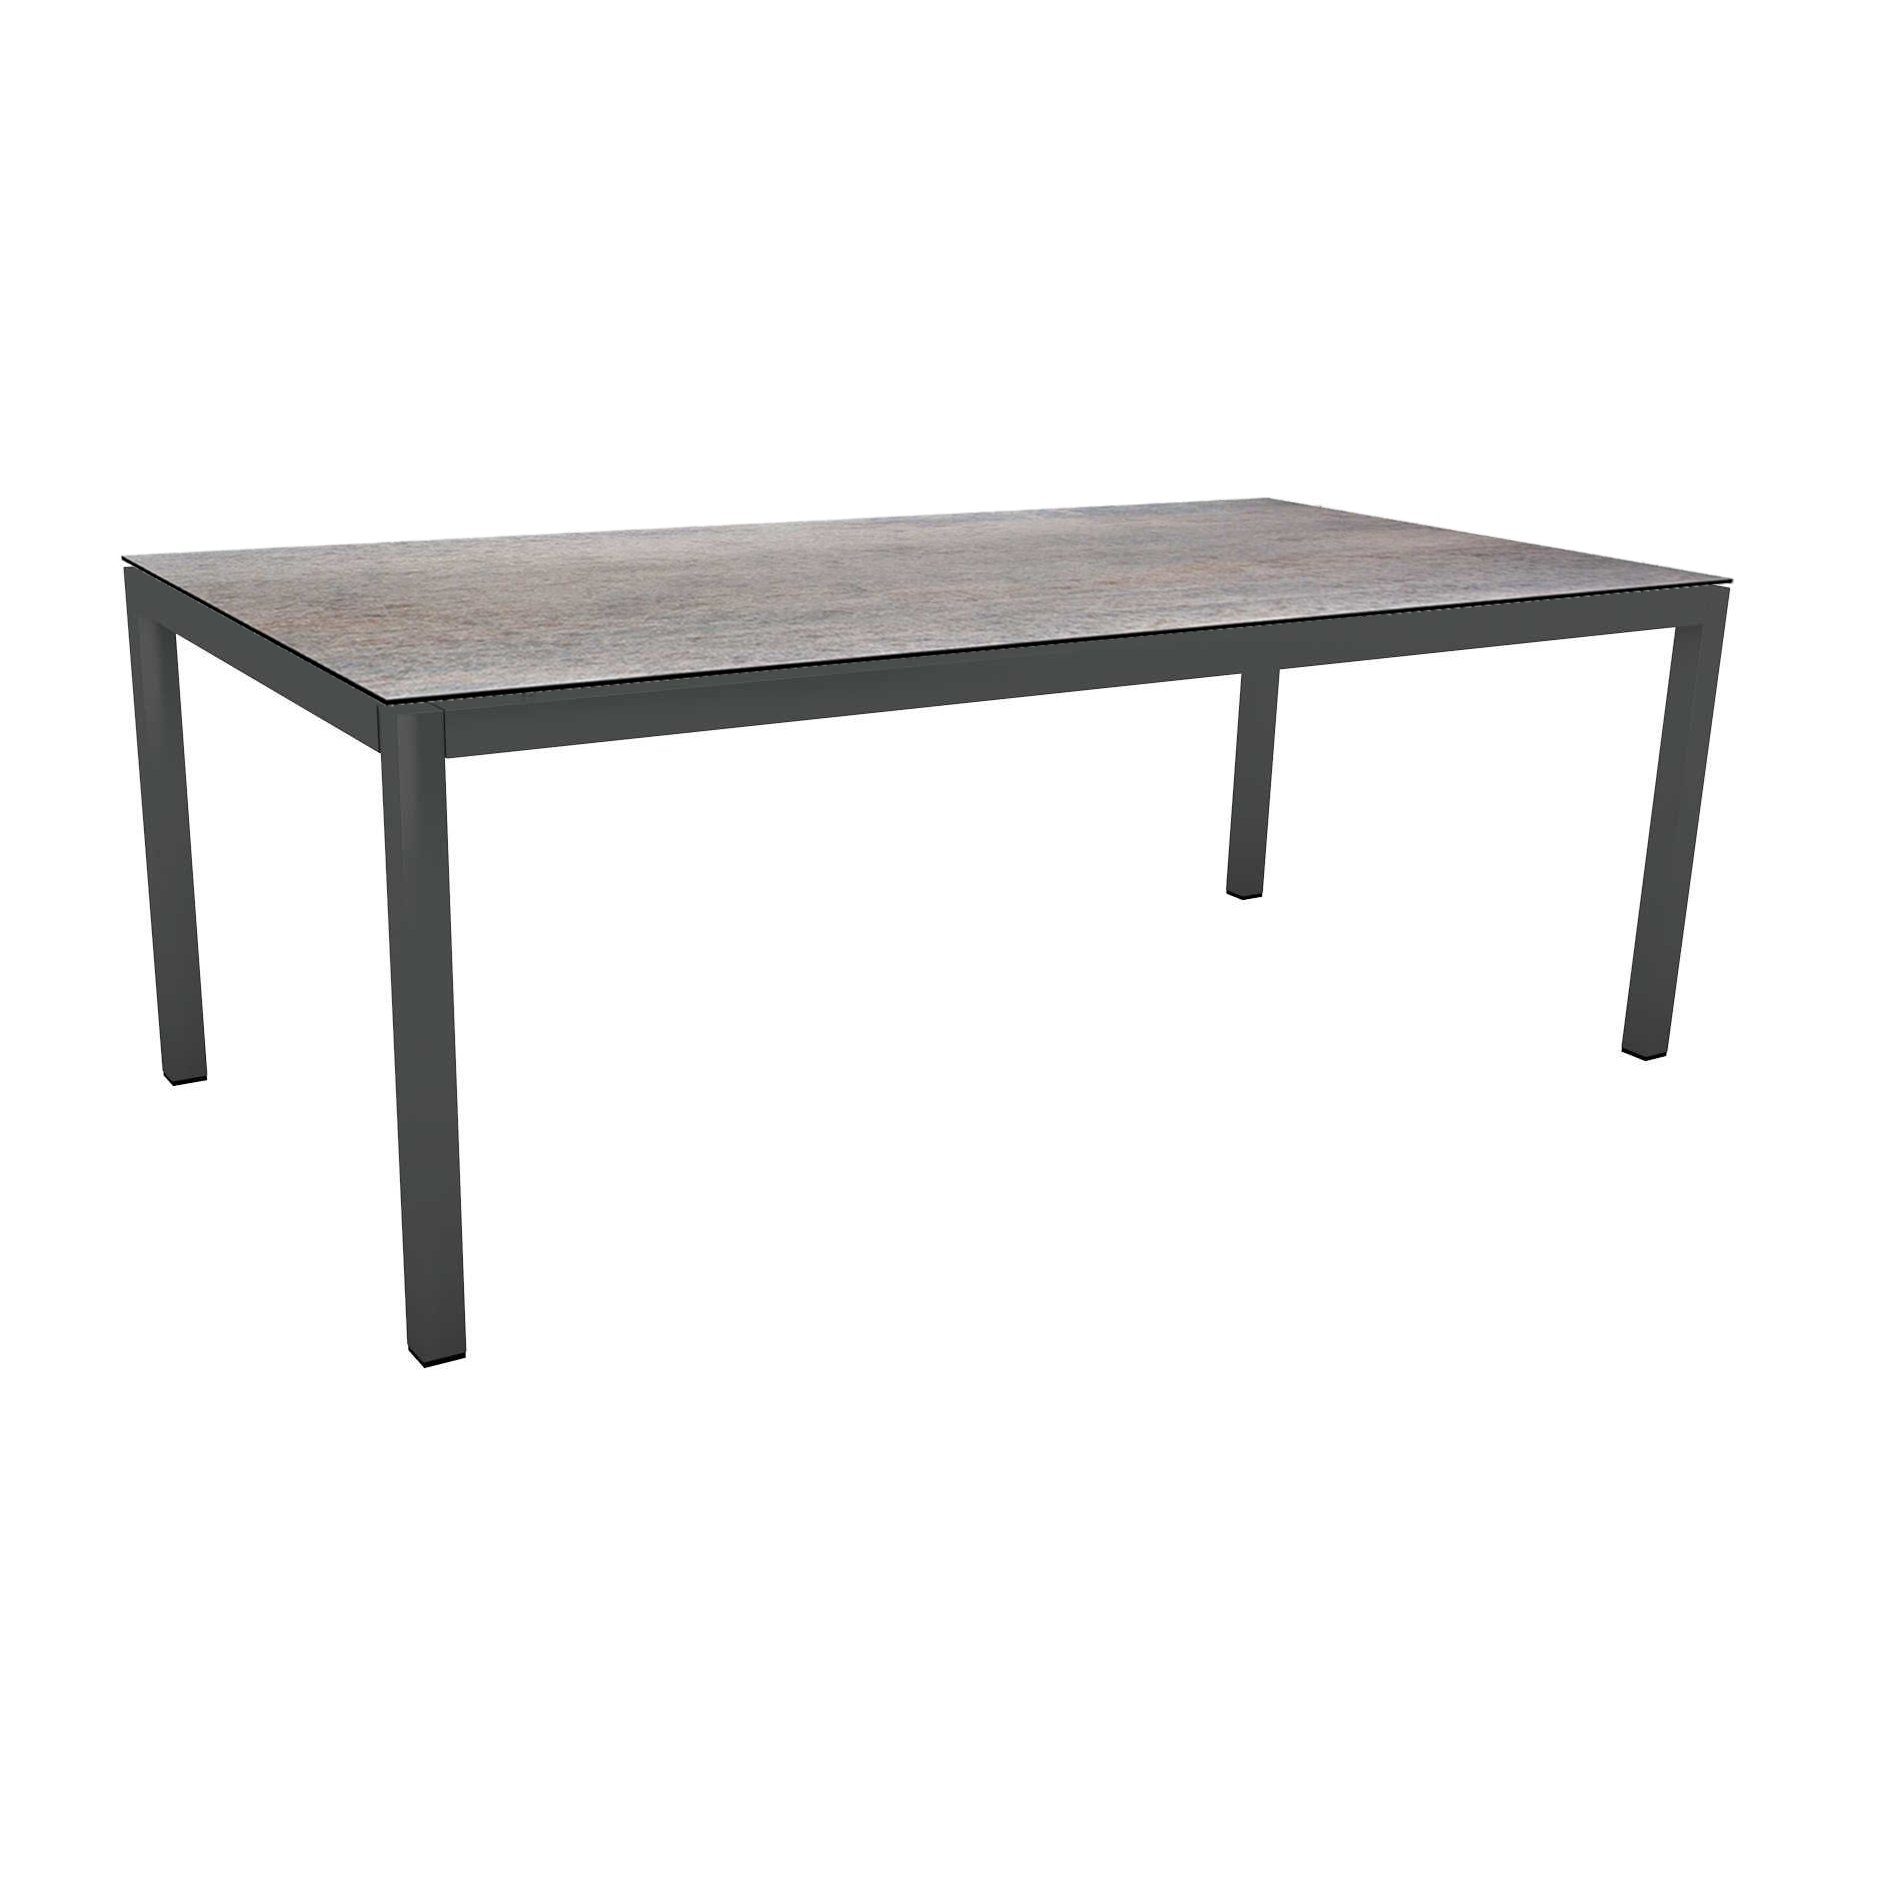 Stern Tischsystem Gartentisch, Gestell Aluminium anthrazit, Tischplatte HPL Smoky, Maße: 200x100 cm